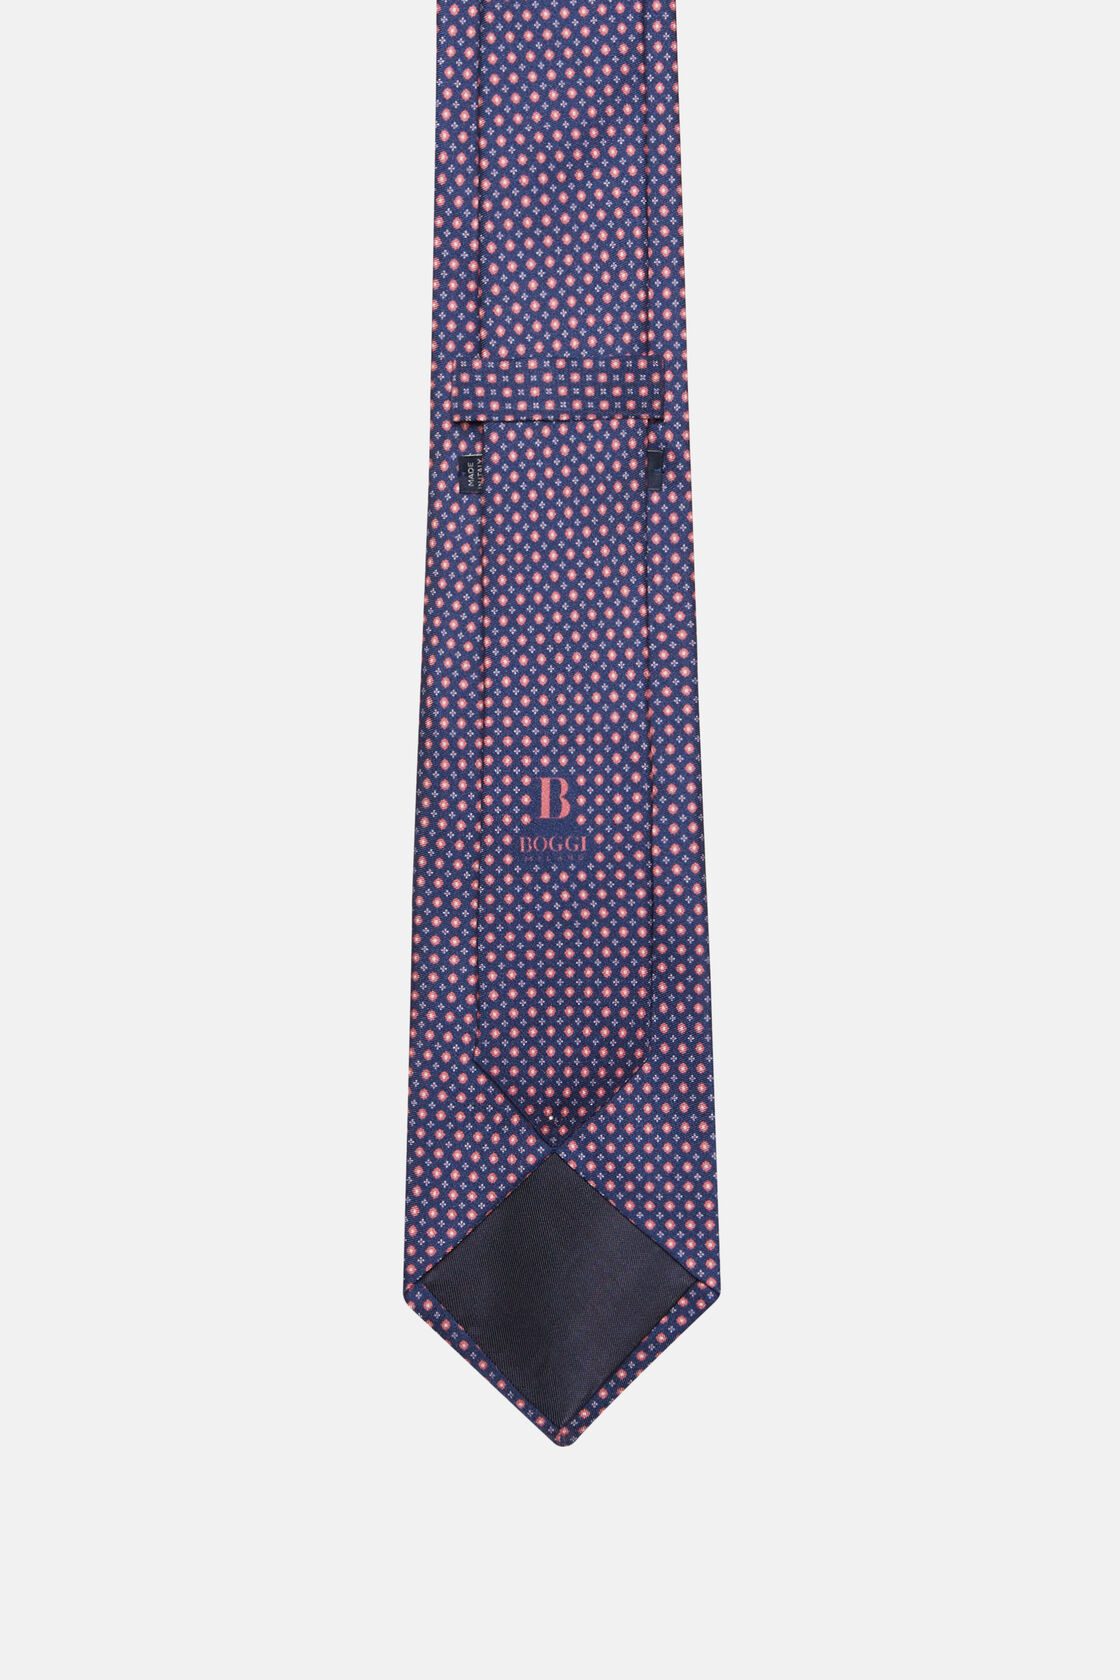 Μεταξωτή γραβάτα με φλοράλ σχέδιο, Burgundy, hi-res